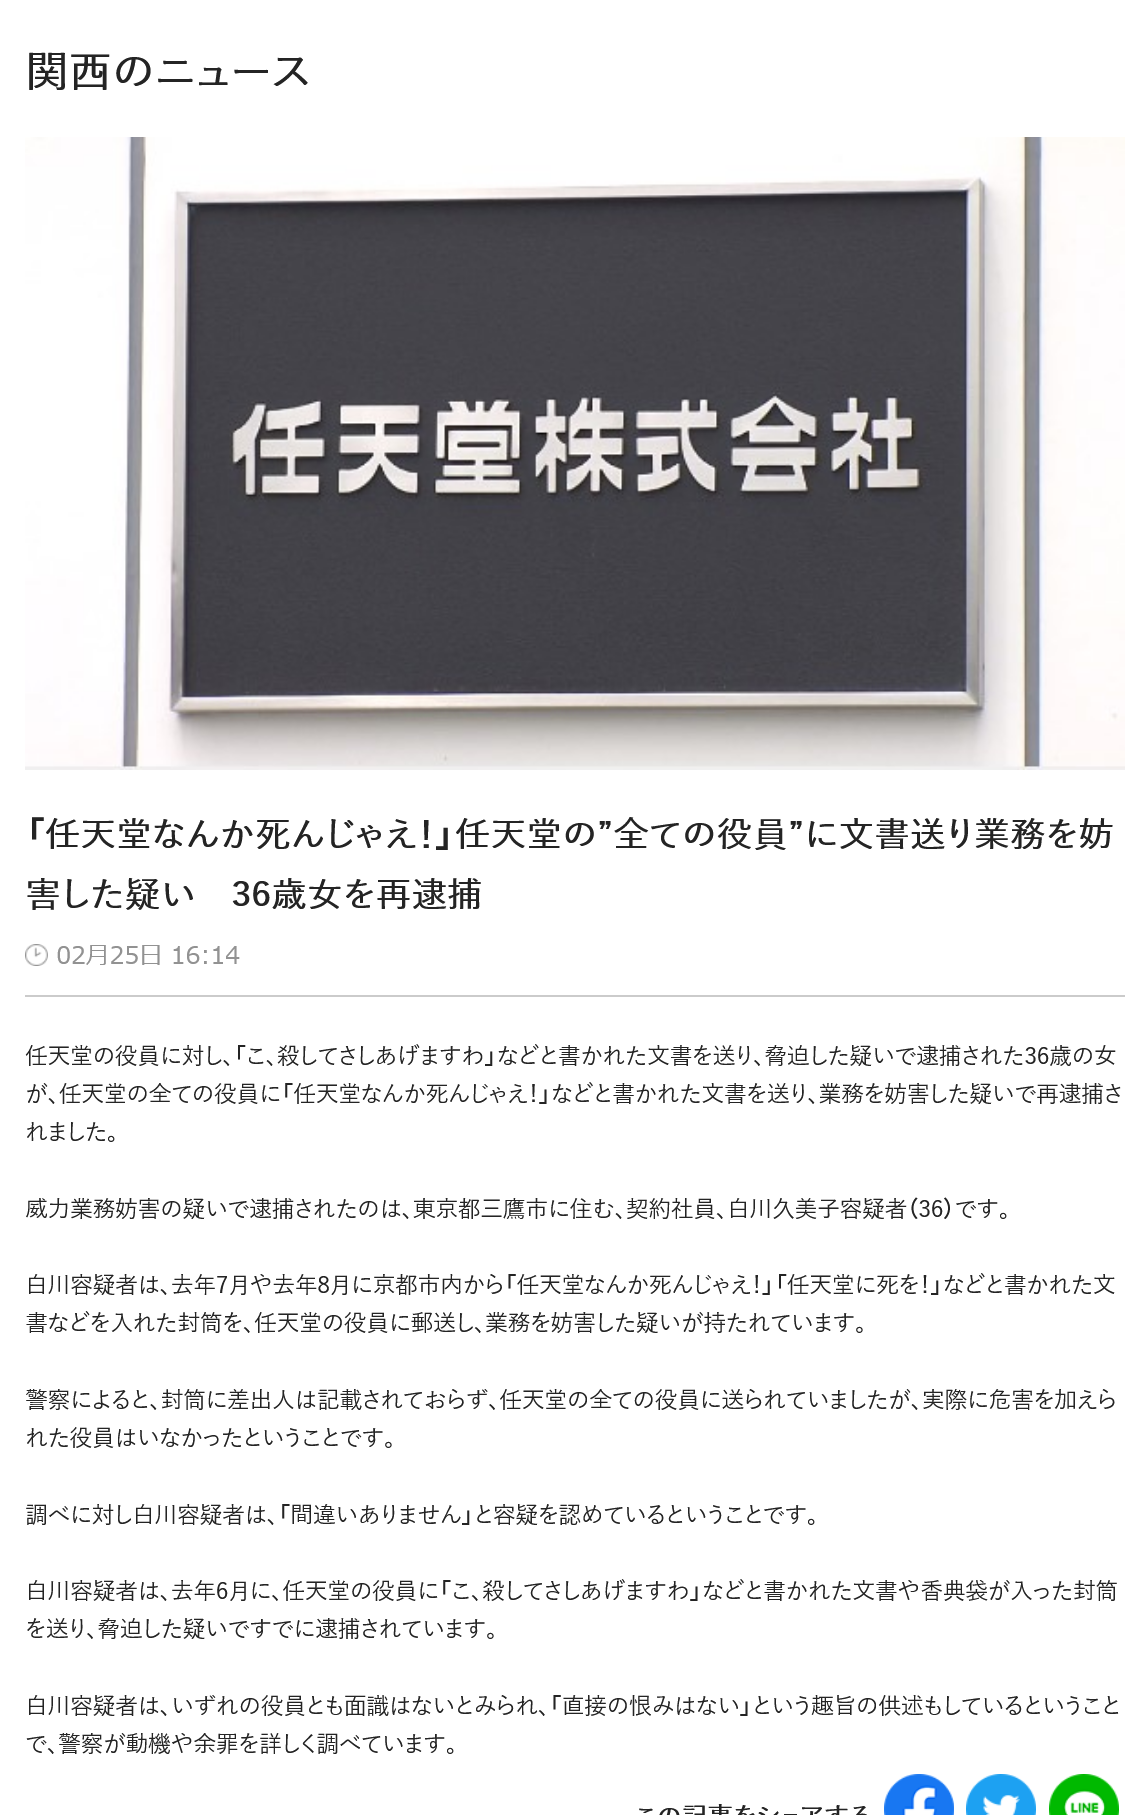 「コ、コ○してさしあげますわ」任天堂の役員全員に殺害予告文書　業務妨害疑いで東京の36歳女を再逮捕へ